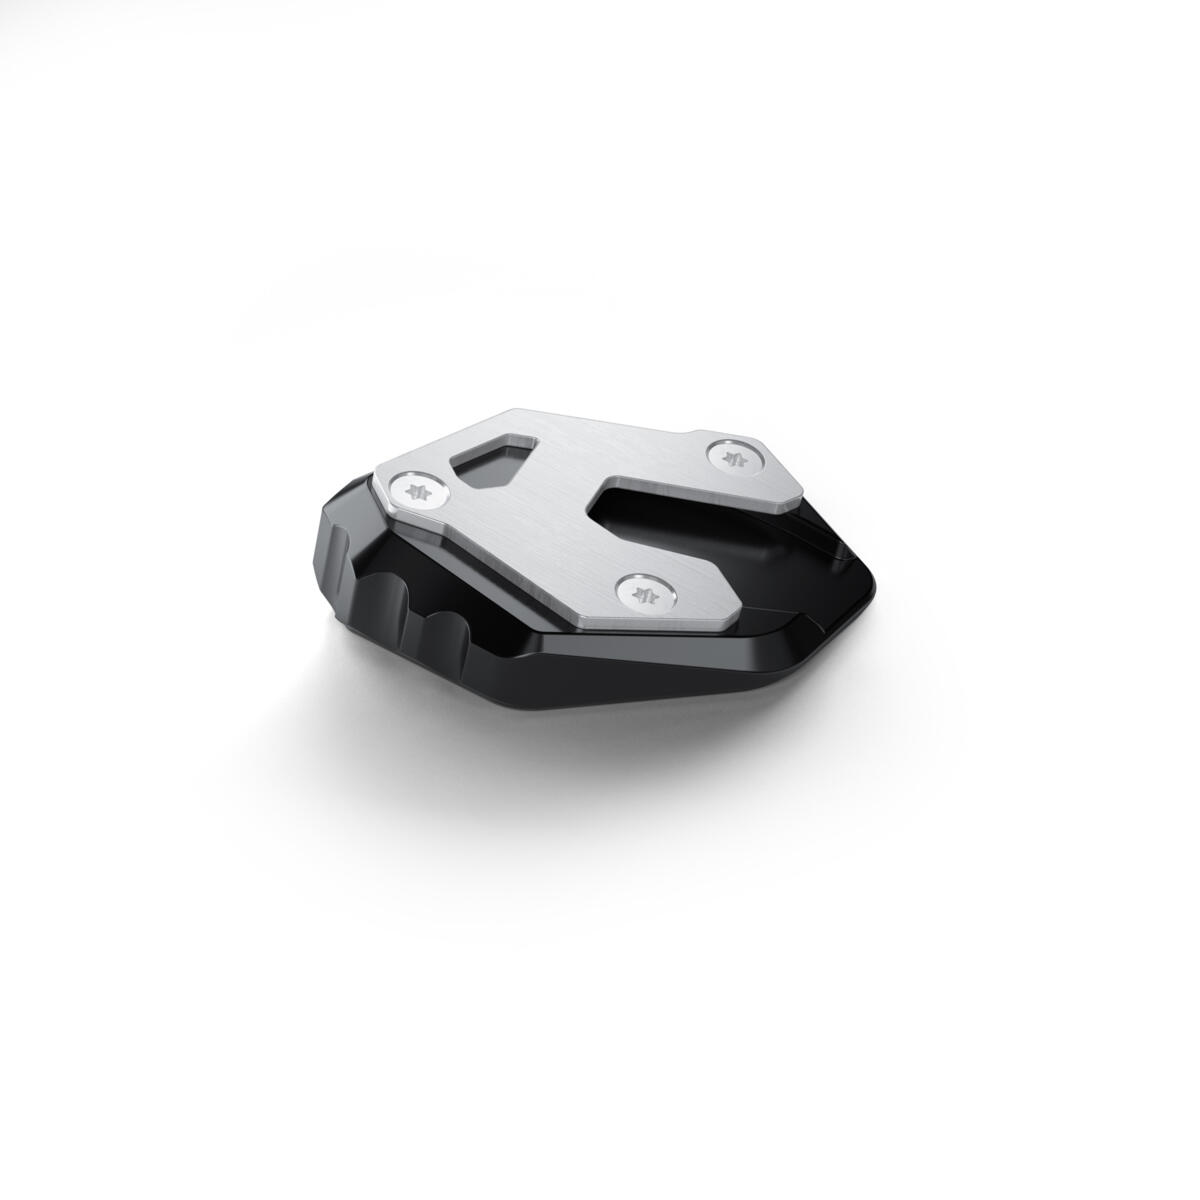 L’équipement de voyage par excellence pour votre TRACER 9, pour prendre la route avec un style fonctionnel. La bulle haute, le déflecteur de bulle ainsi que la selle confort chauffante vous offrent plus de confort pour les longs trajets. Le top case ainsi que les élégantes valises latérales de la TRACER 9 GT vous permettent d’emmener vos effets personnels lors des trajets. Chargez facilement votre téléphone avec le chargeur USB et vérifiez la pression de vos pneus grâce au système de contrôle de la pression des pneus. Le pack comprend également un support GPS dédié qui vous permet de fixer votre GPS en toute sécurité. L’extension de la béquille latérale vous garantit une plus grande stabilité lorsque vous garez la moto, et ce sur n’importe quelle surface. La protection de radiateur protège votre radiateur contre les pierres et le gravier qui se trouvent sur votre chemin, tandis que la protection moteur vous protège contre les chutes accidentelles. Les feux de brouillard à LED offrent une meilleure visibilité en cas de mauvais temps pour garantir une sécurité optimale. Pendant que vous profitez de votre trajet, nous avons veillé à ce que vos passagers soient eux aussi dorlotés. Ils apprécieront notamment le confort de la selle passager et du dosseret.